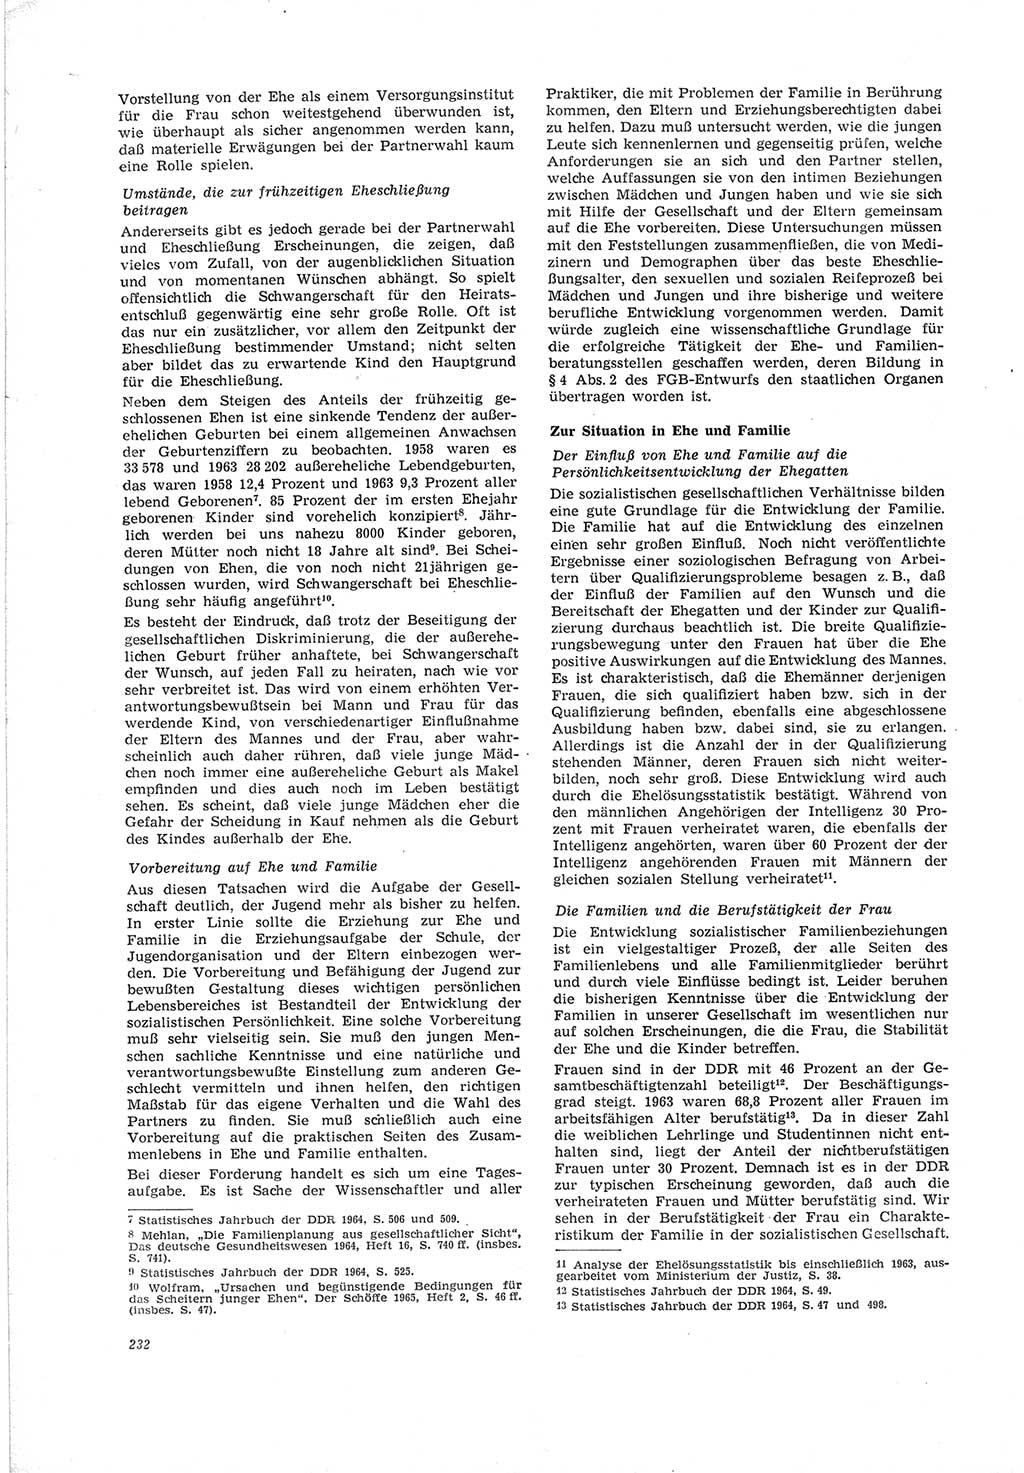 Neue Justiz (NJ), Zeitschrift für Recht und Rechtswissenschaft [Deutsche Demokratische Republik (DDR)], 19. Jahrgang 1965, Seite 232 (NJ DDR 1965, S. 232)